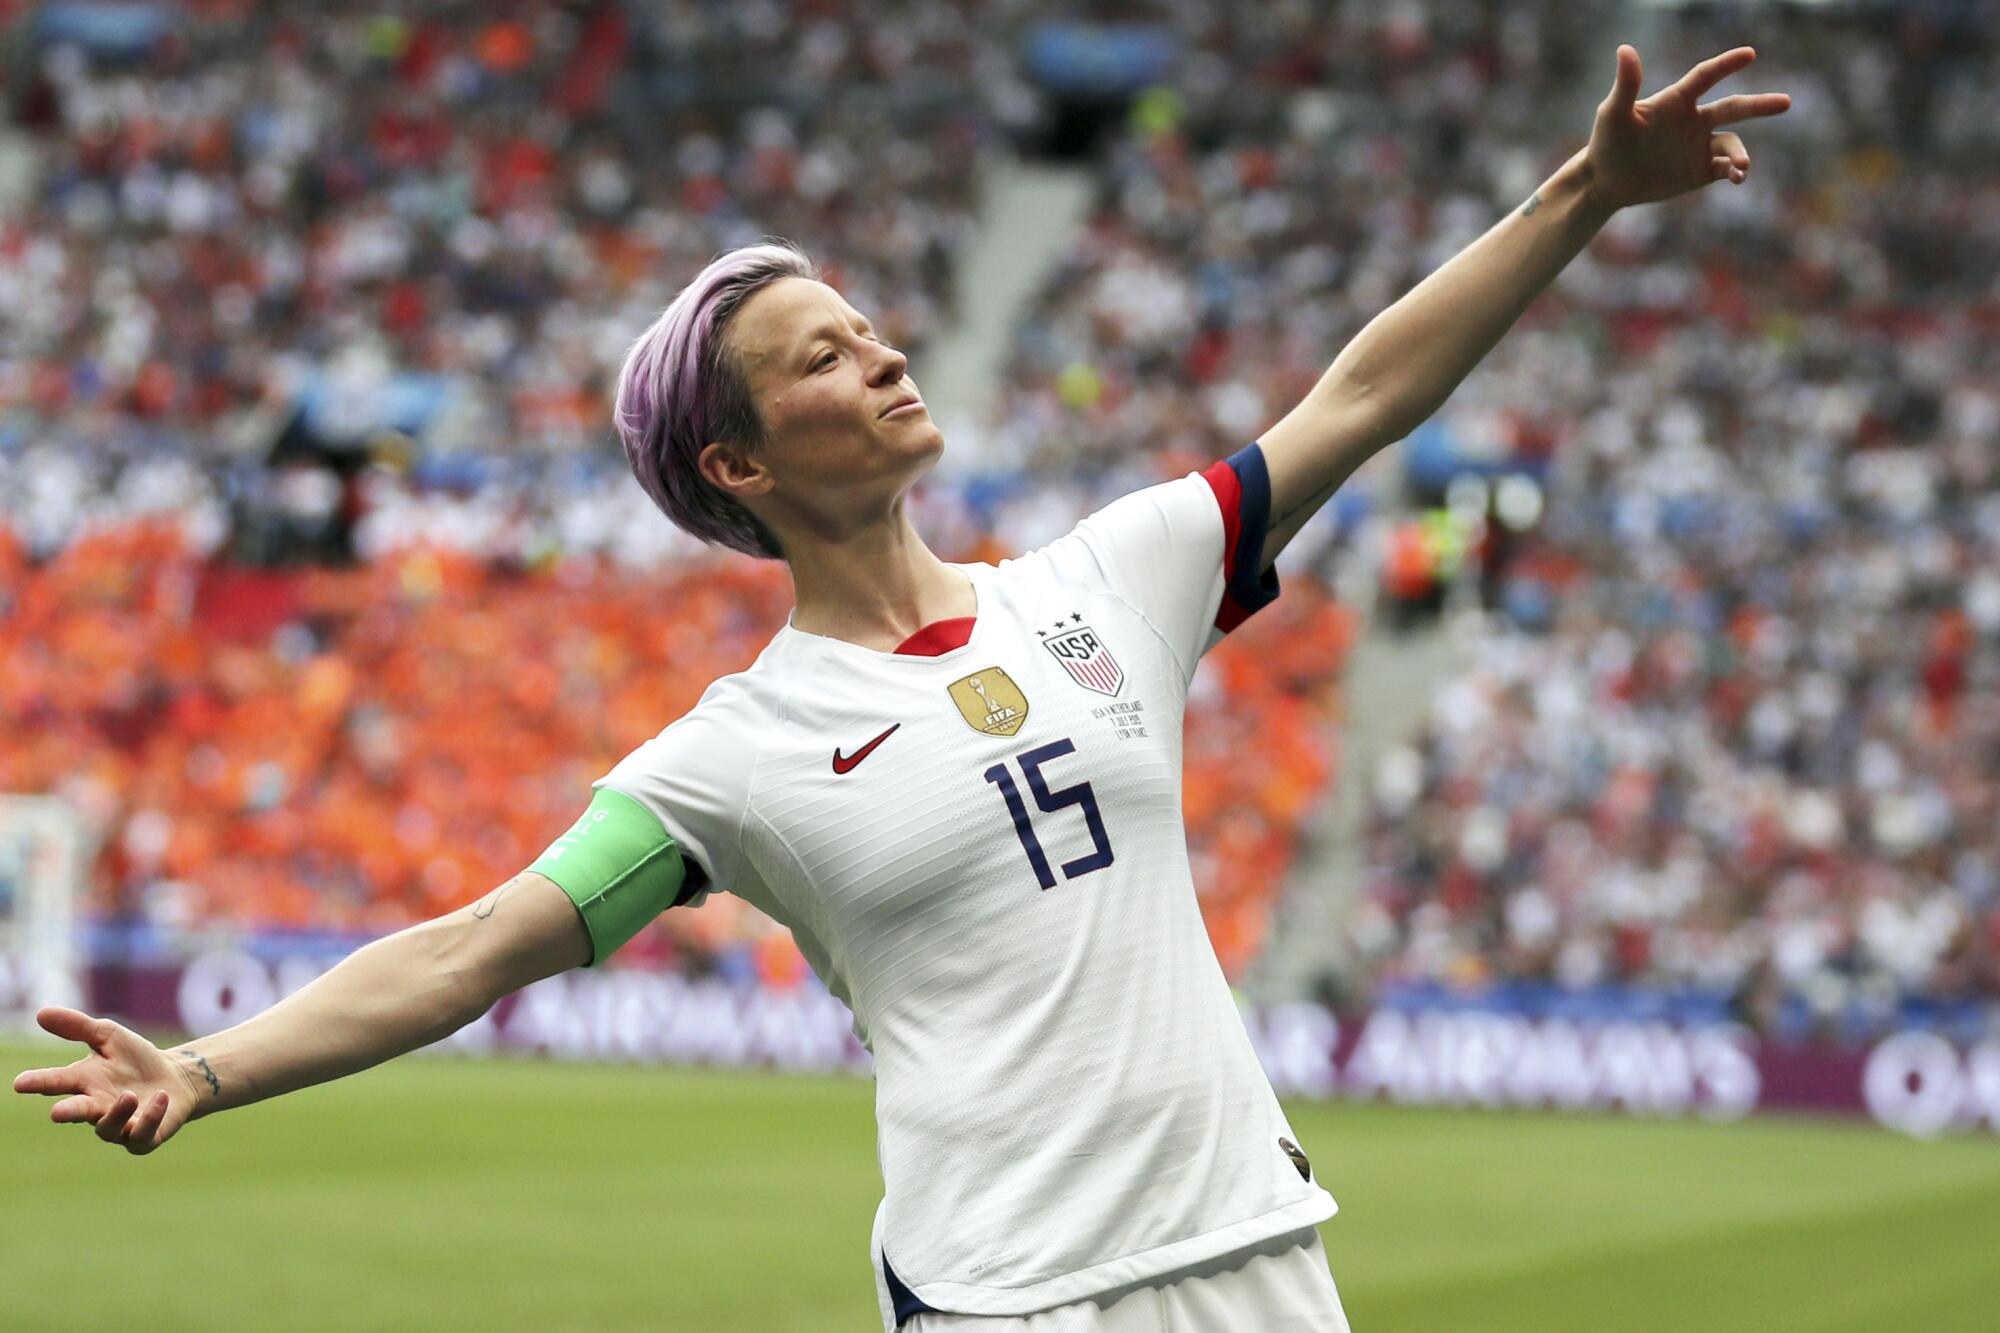 چهره جنجالی فوتبال زنان آمریکا با اشک دنیای فوتبال را ترک کرد + عکس